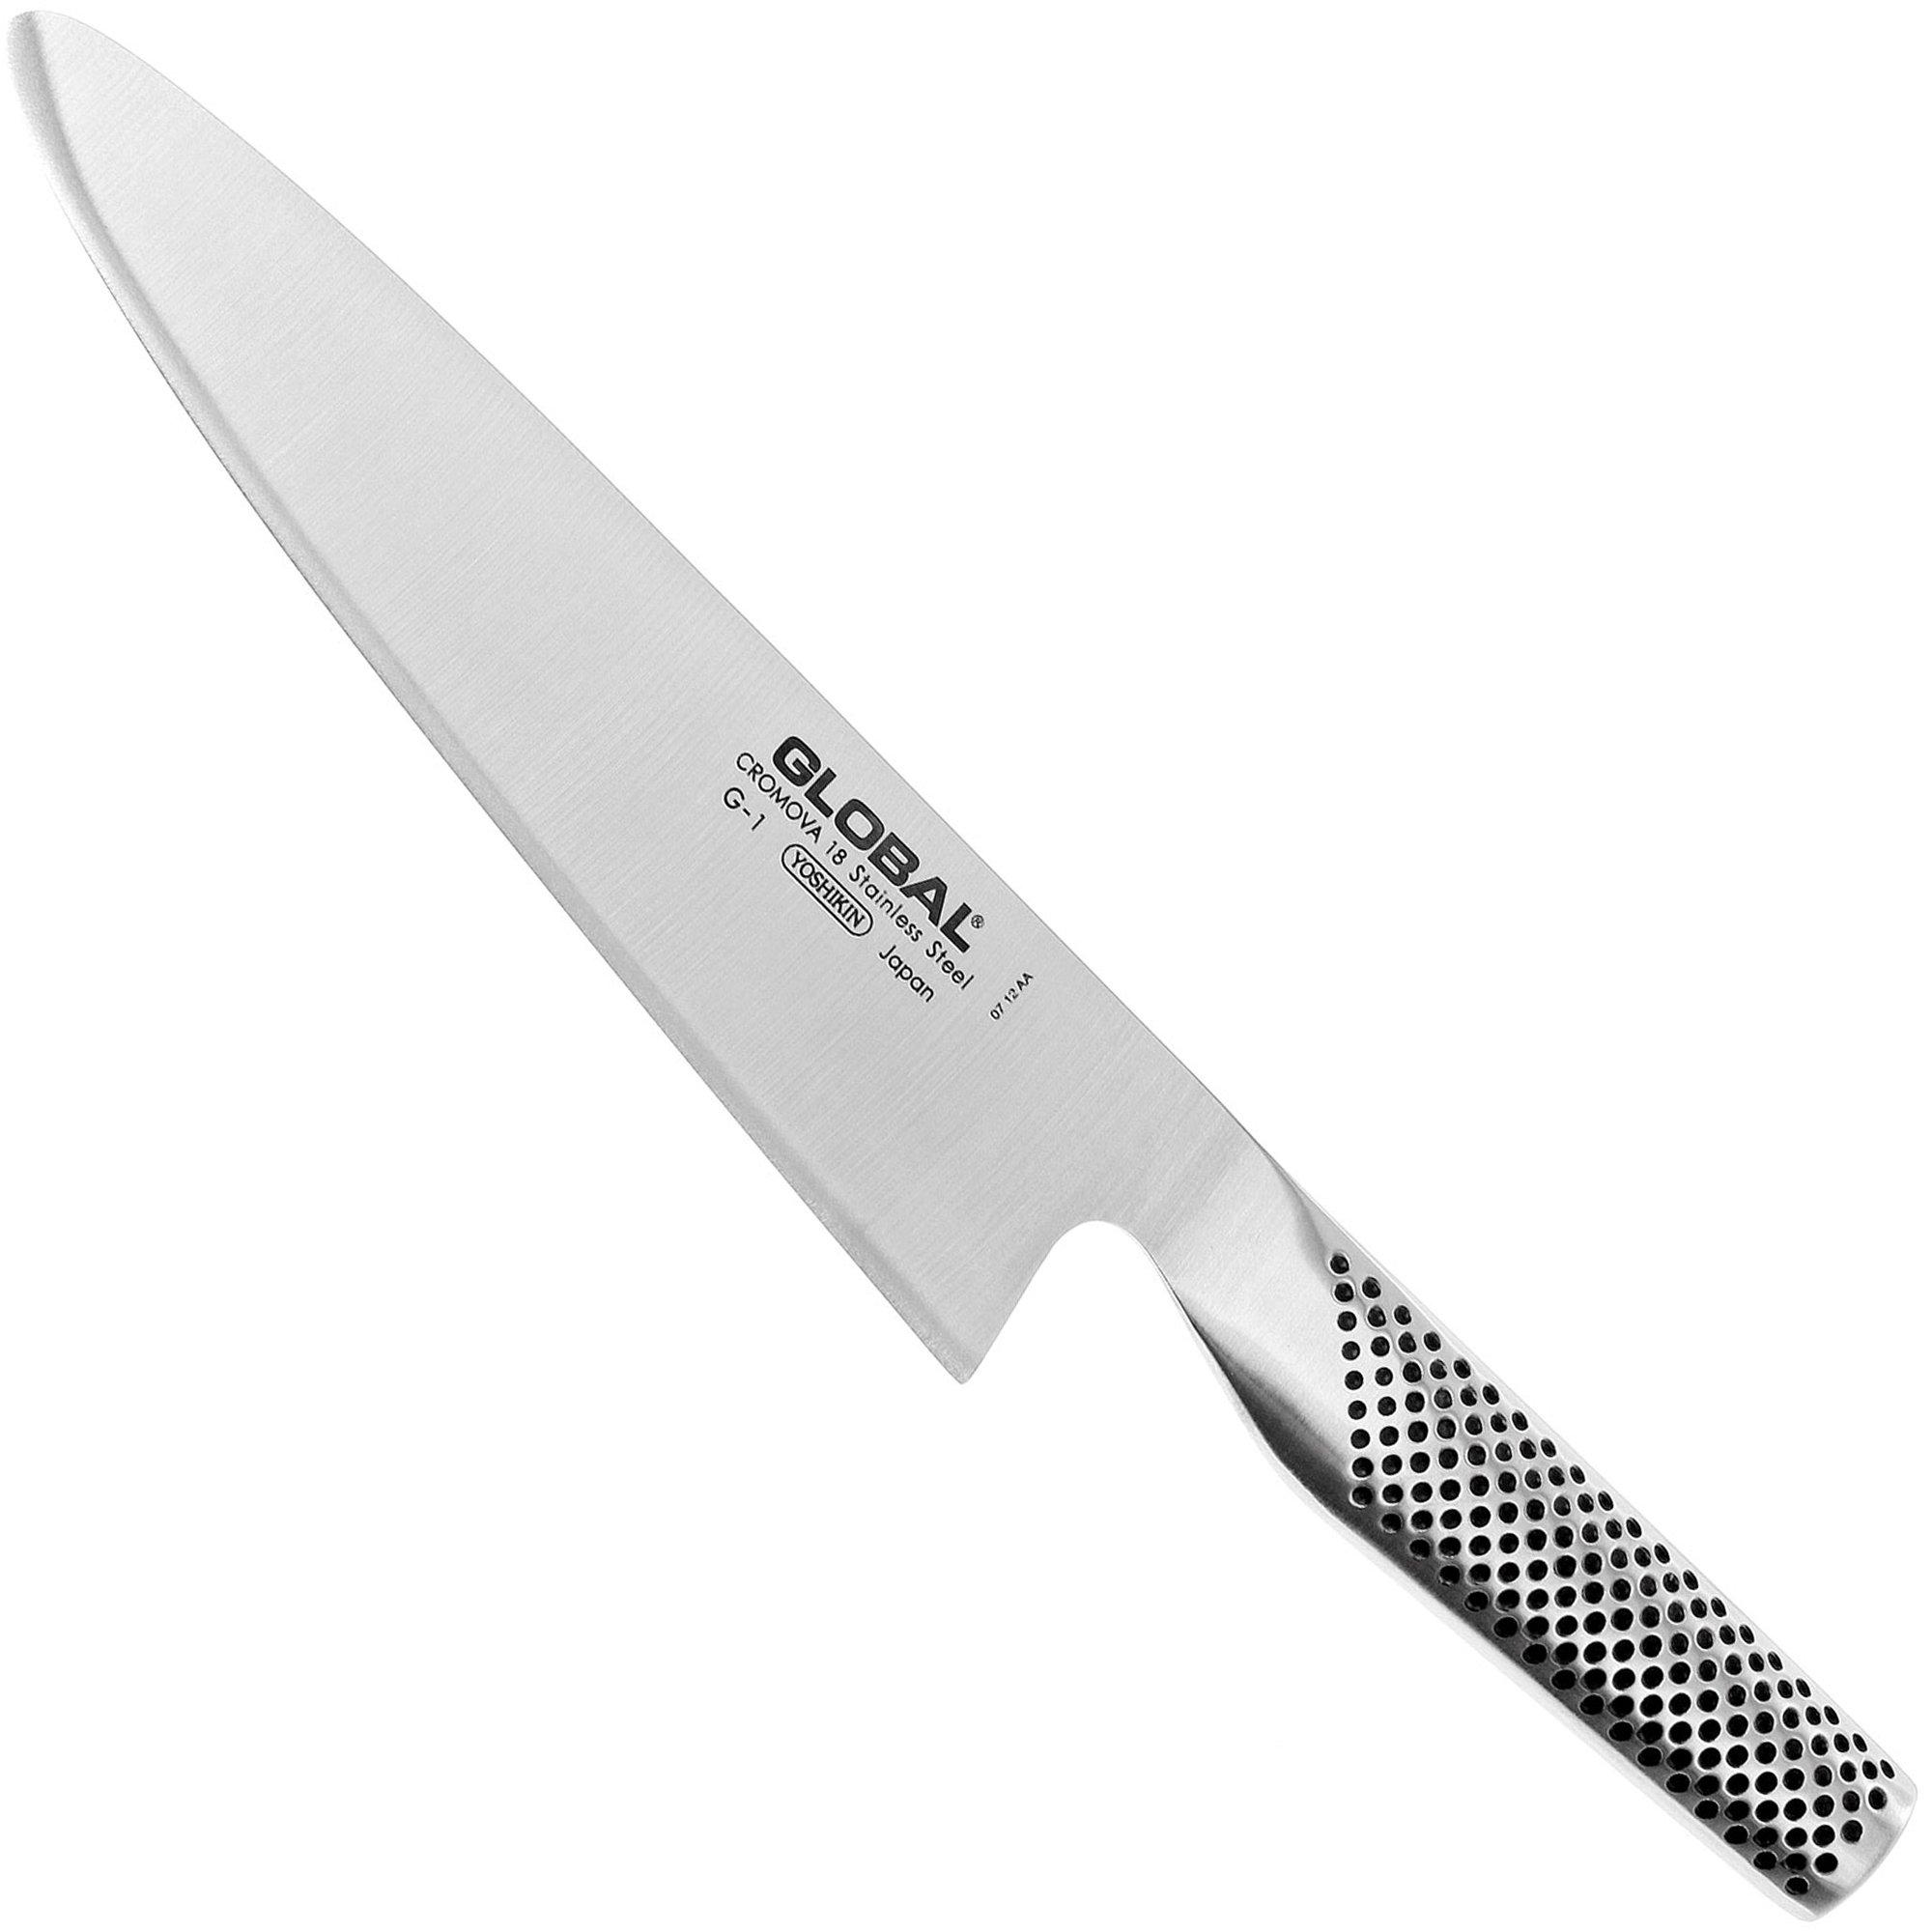 Couteau de Chef Global G-2